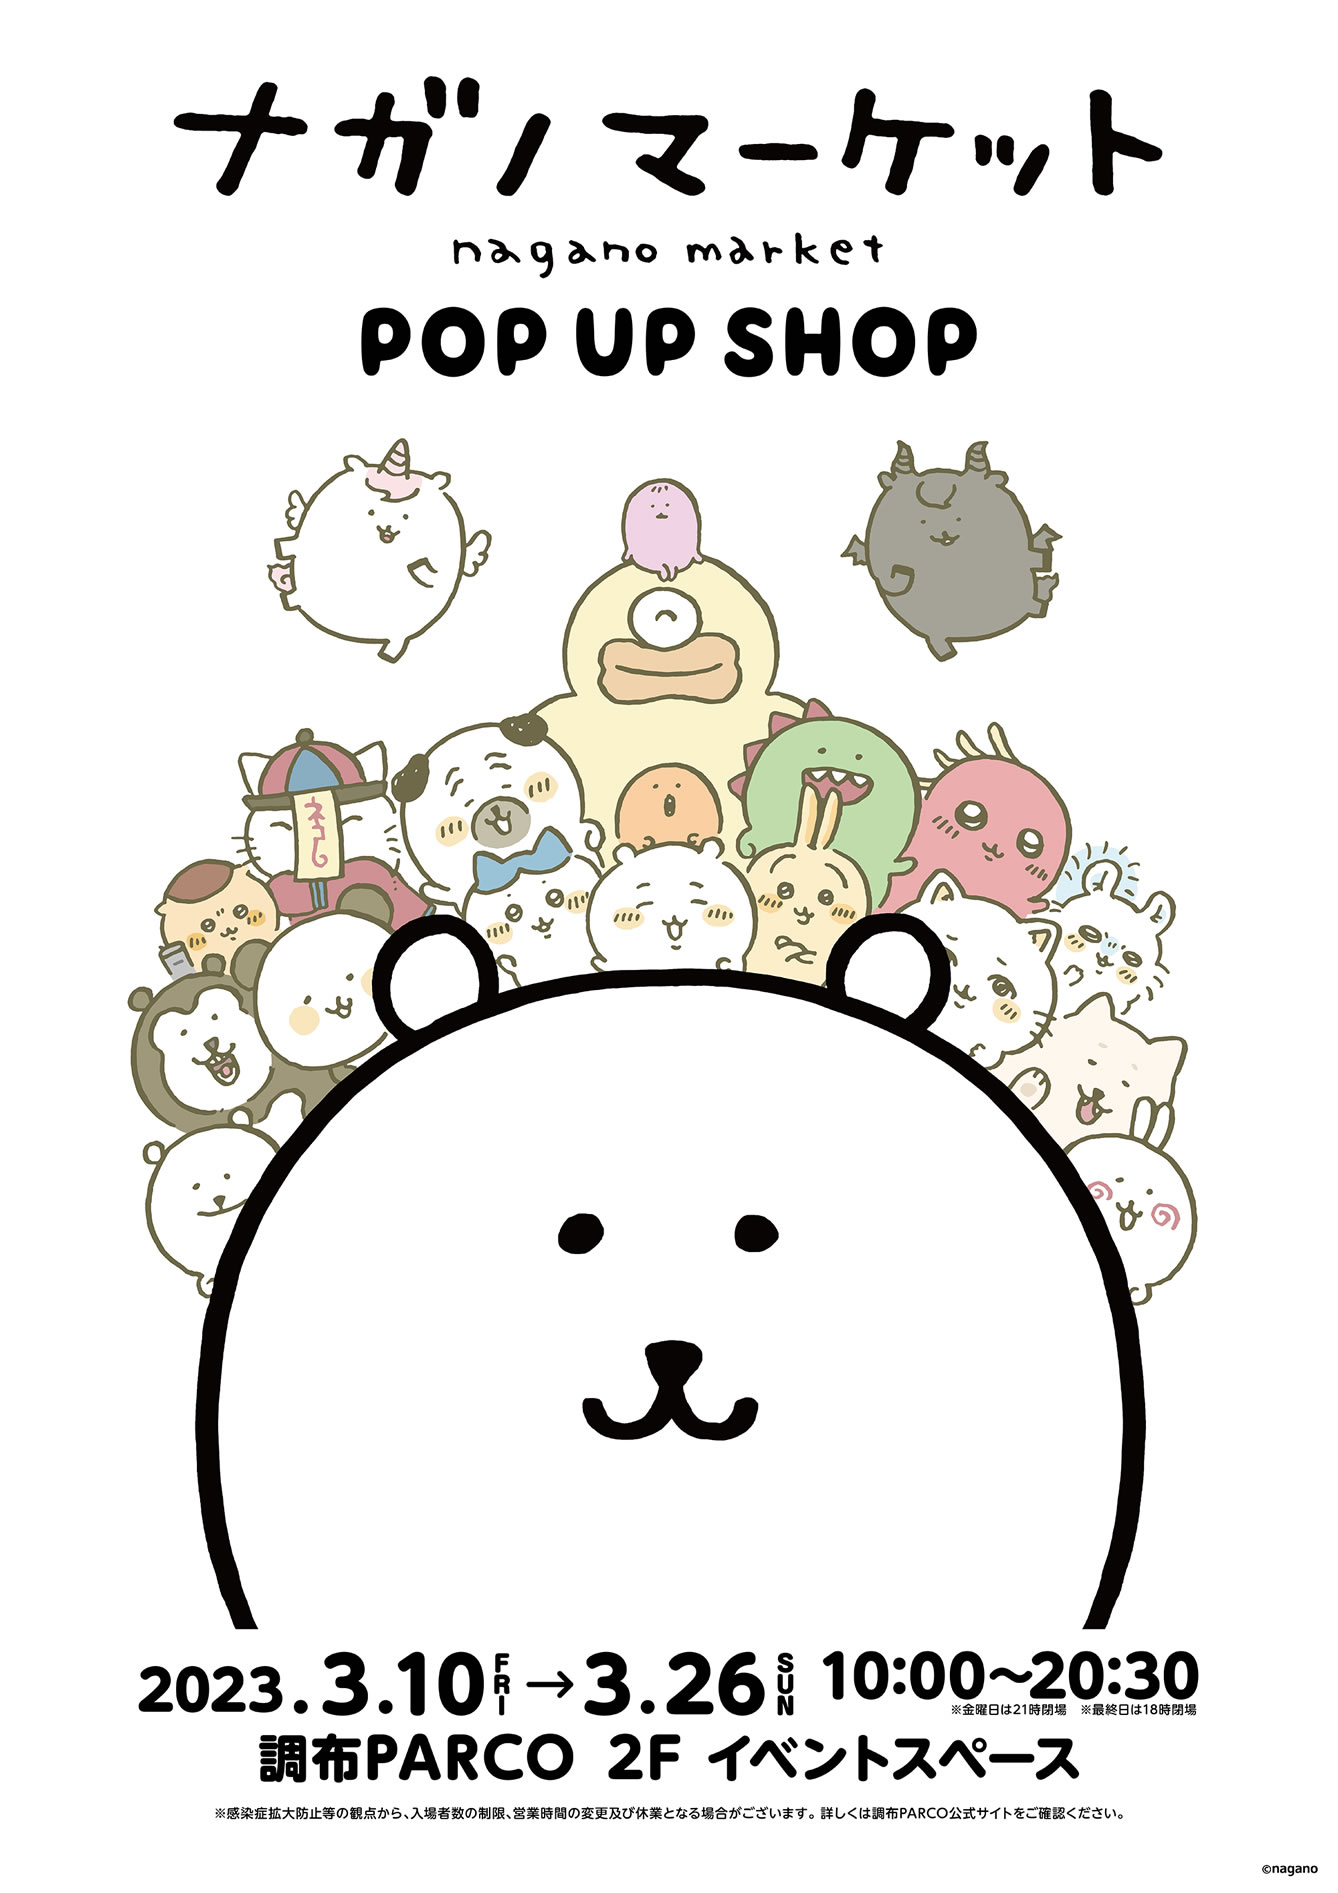 ナガノマーケット POP UP SHOP